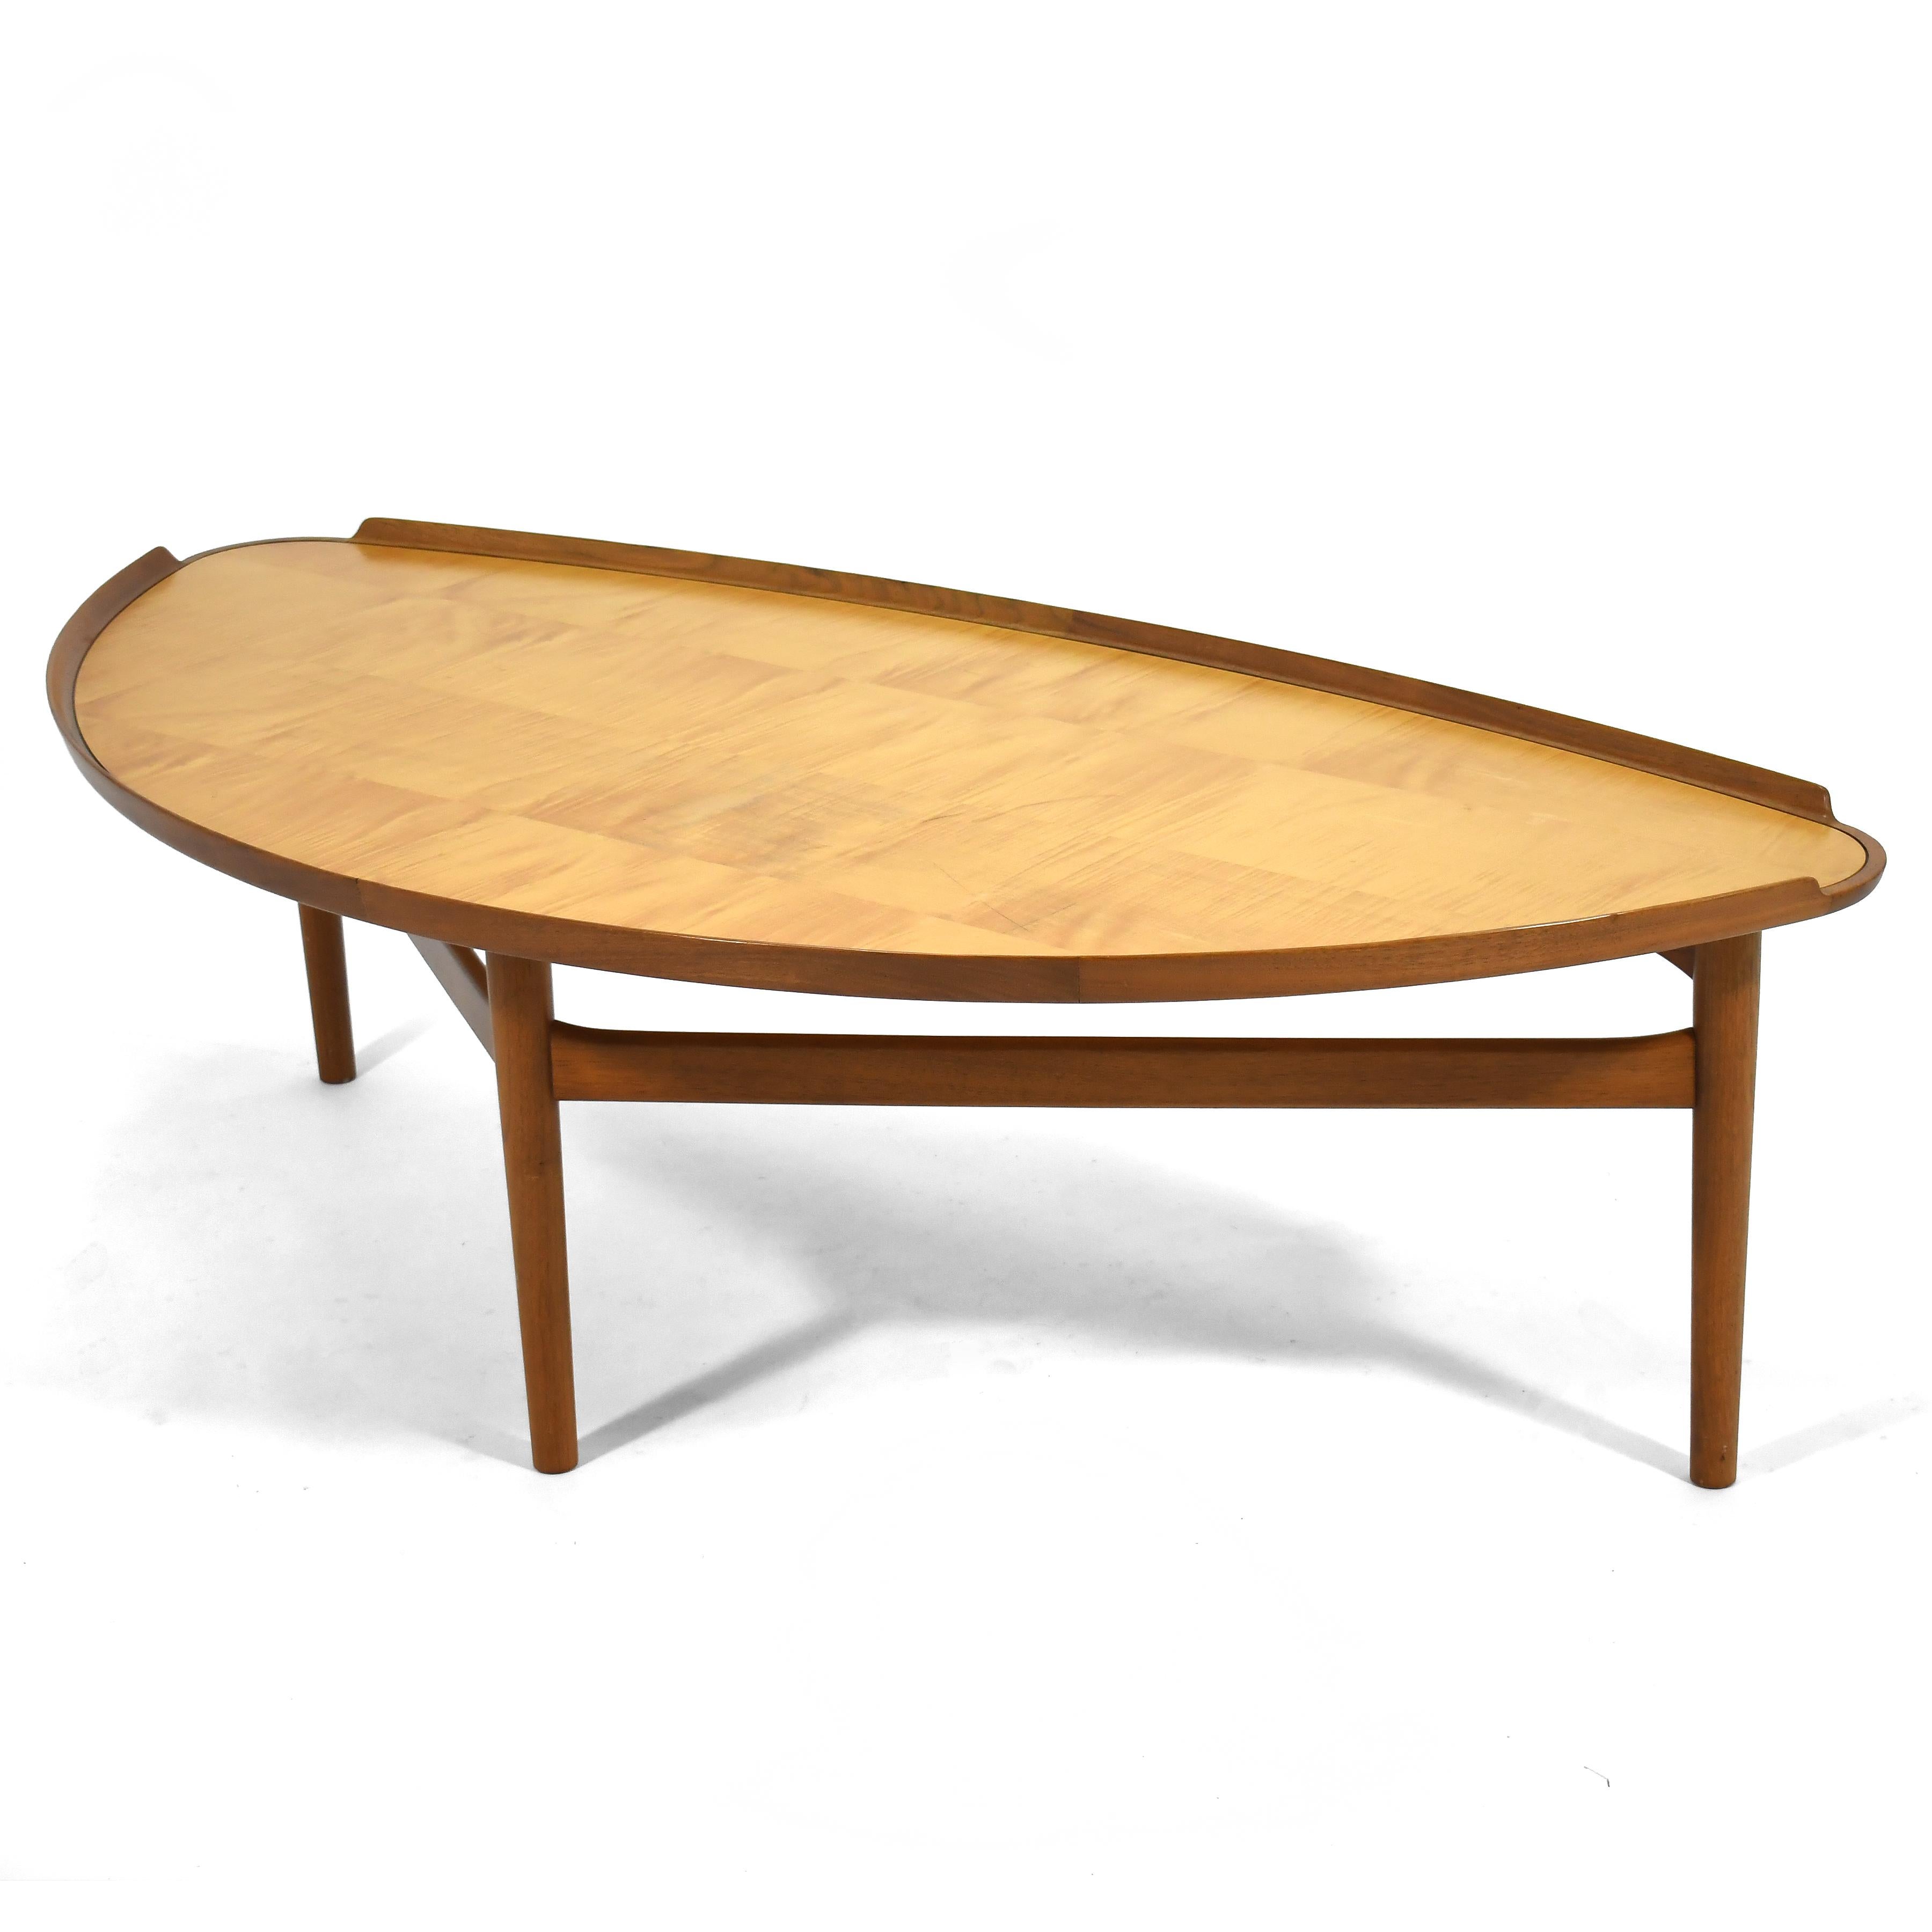 Eine erhabene Form, ein wundervoller großer Maßstab und reizvolle Details kennzeichnen diesen Couchtisch des dänischen Meisters Finn Juhls. Dieser Tisch gehört zu den Entwürfen, die Juhl 1951 für den amerikanischen Hersteller Baker anfertigte. 1998